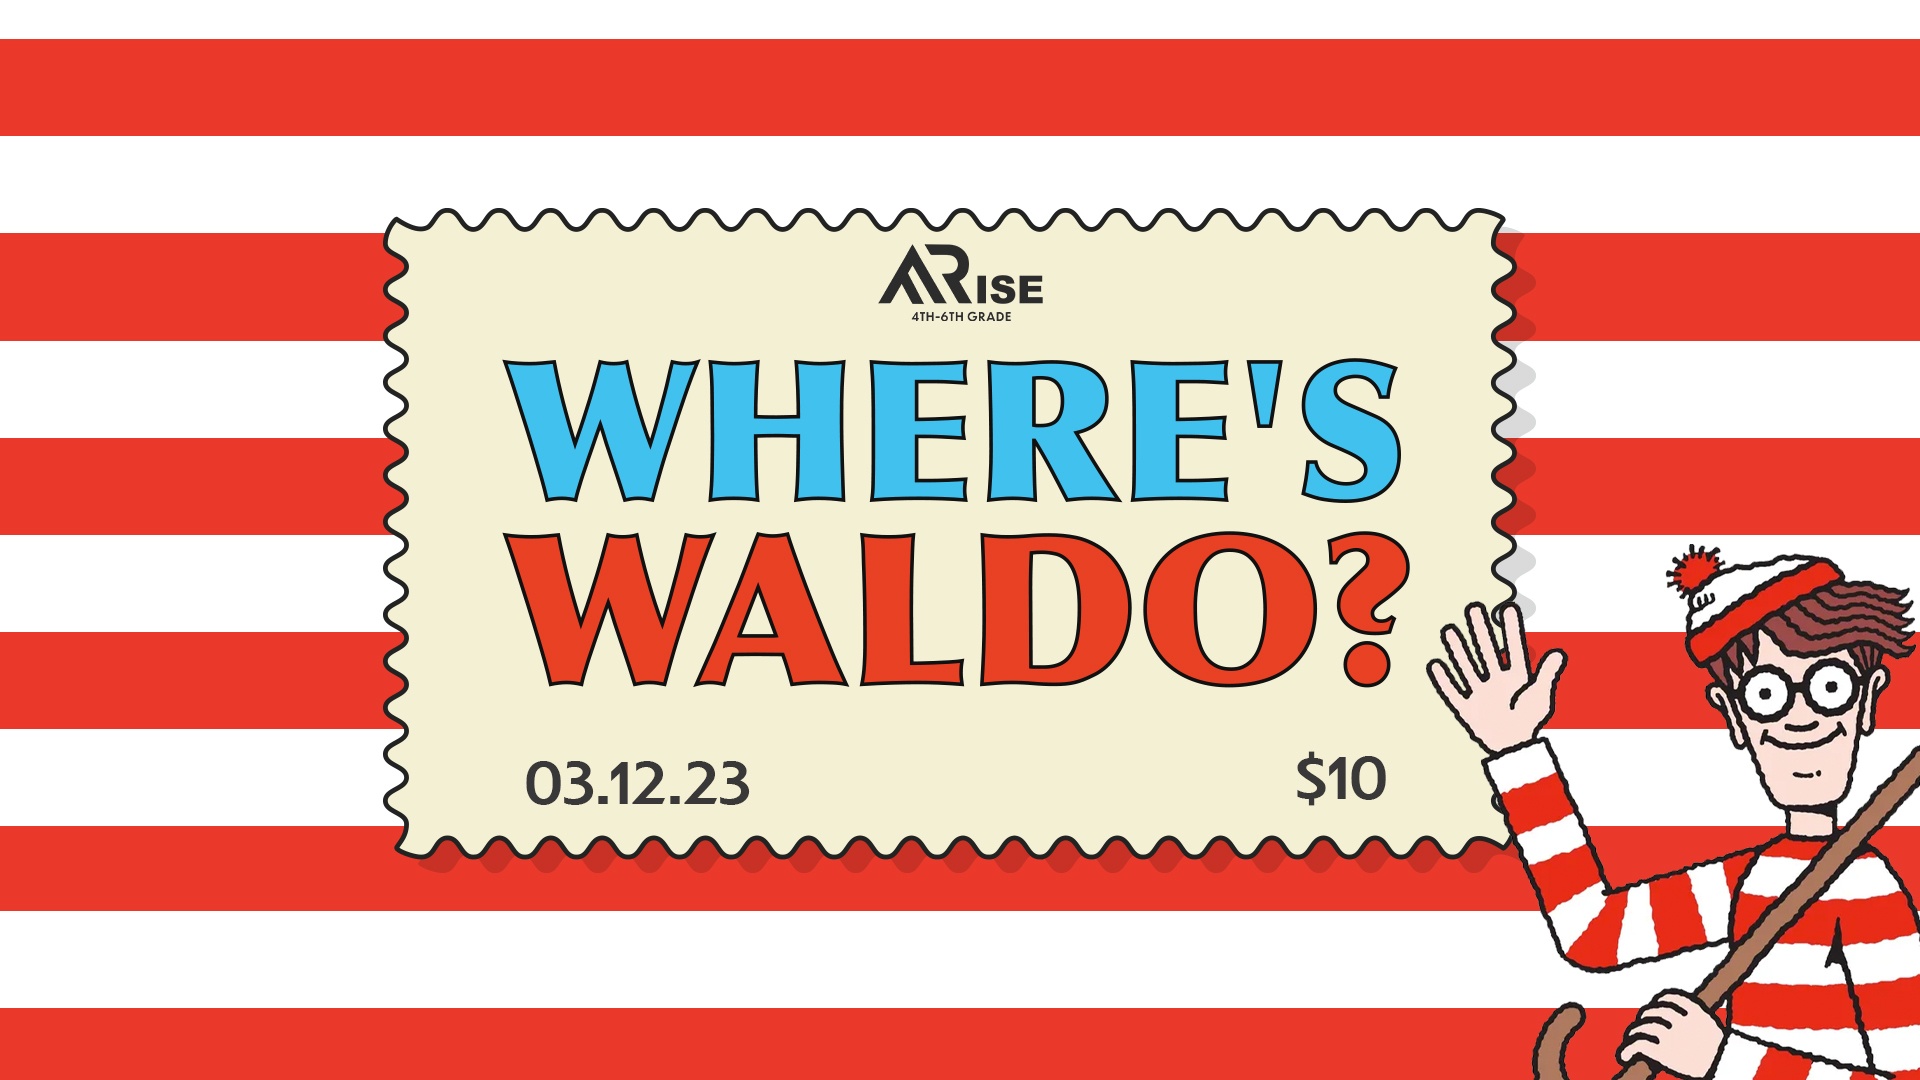 Wheres Waldo 1920 x 1080